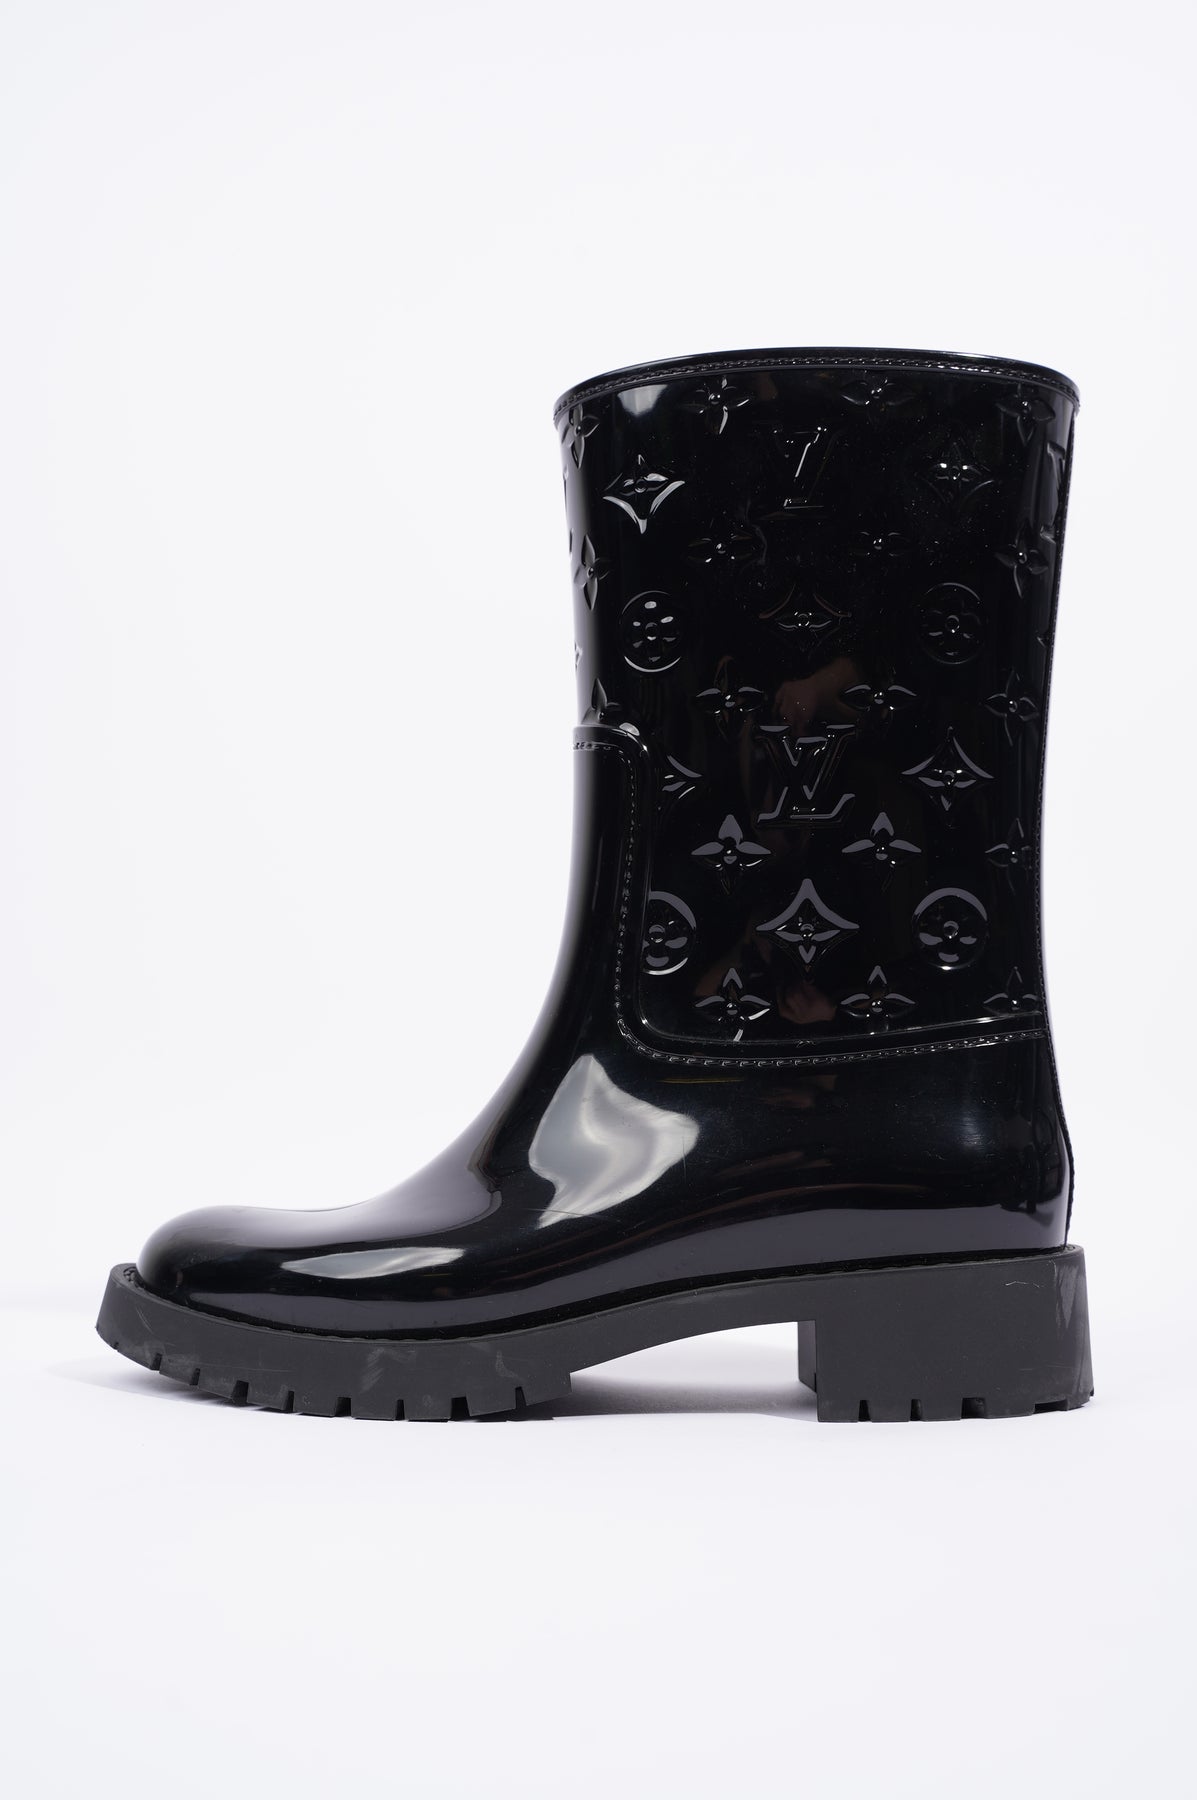 Louis Vuitton Uniform Black Leather Pumps Size UK 5. Eu 38.5. New.